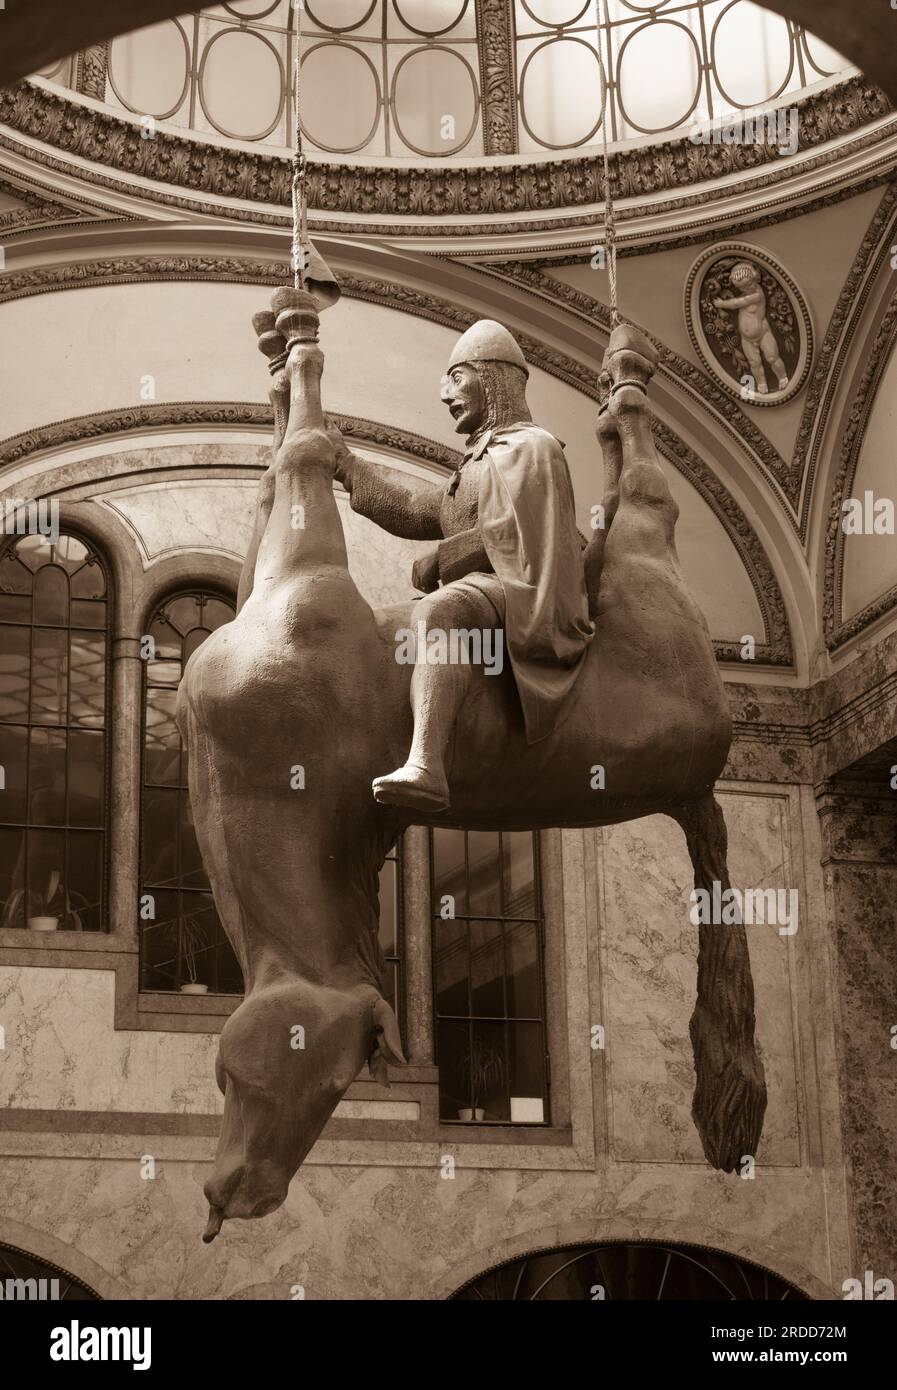 PRAG, TSCHECHISCHE REPUBLIK, EUROPA - Statue von König Wenzel, der auf einem kopfüber toten Pferd reitet, im Jugendstil-Lucerna-Palast. Von Künstler David Cerny. Stockfoto